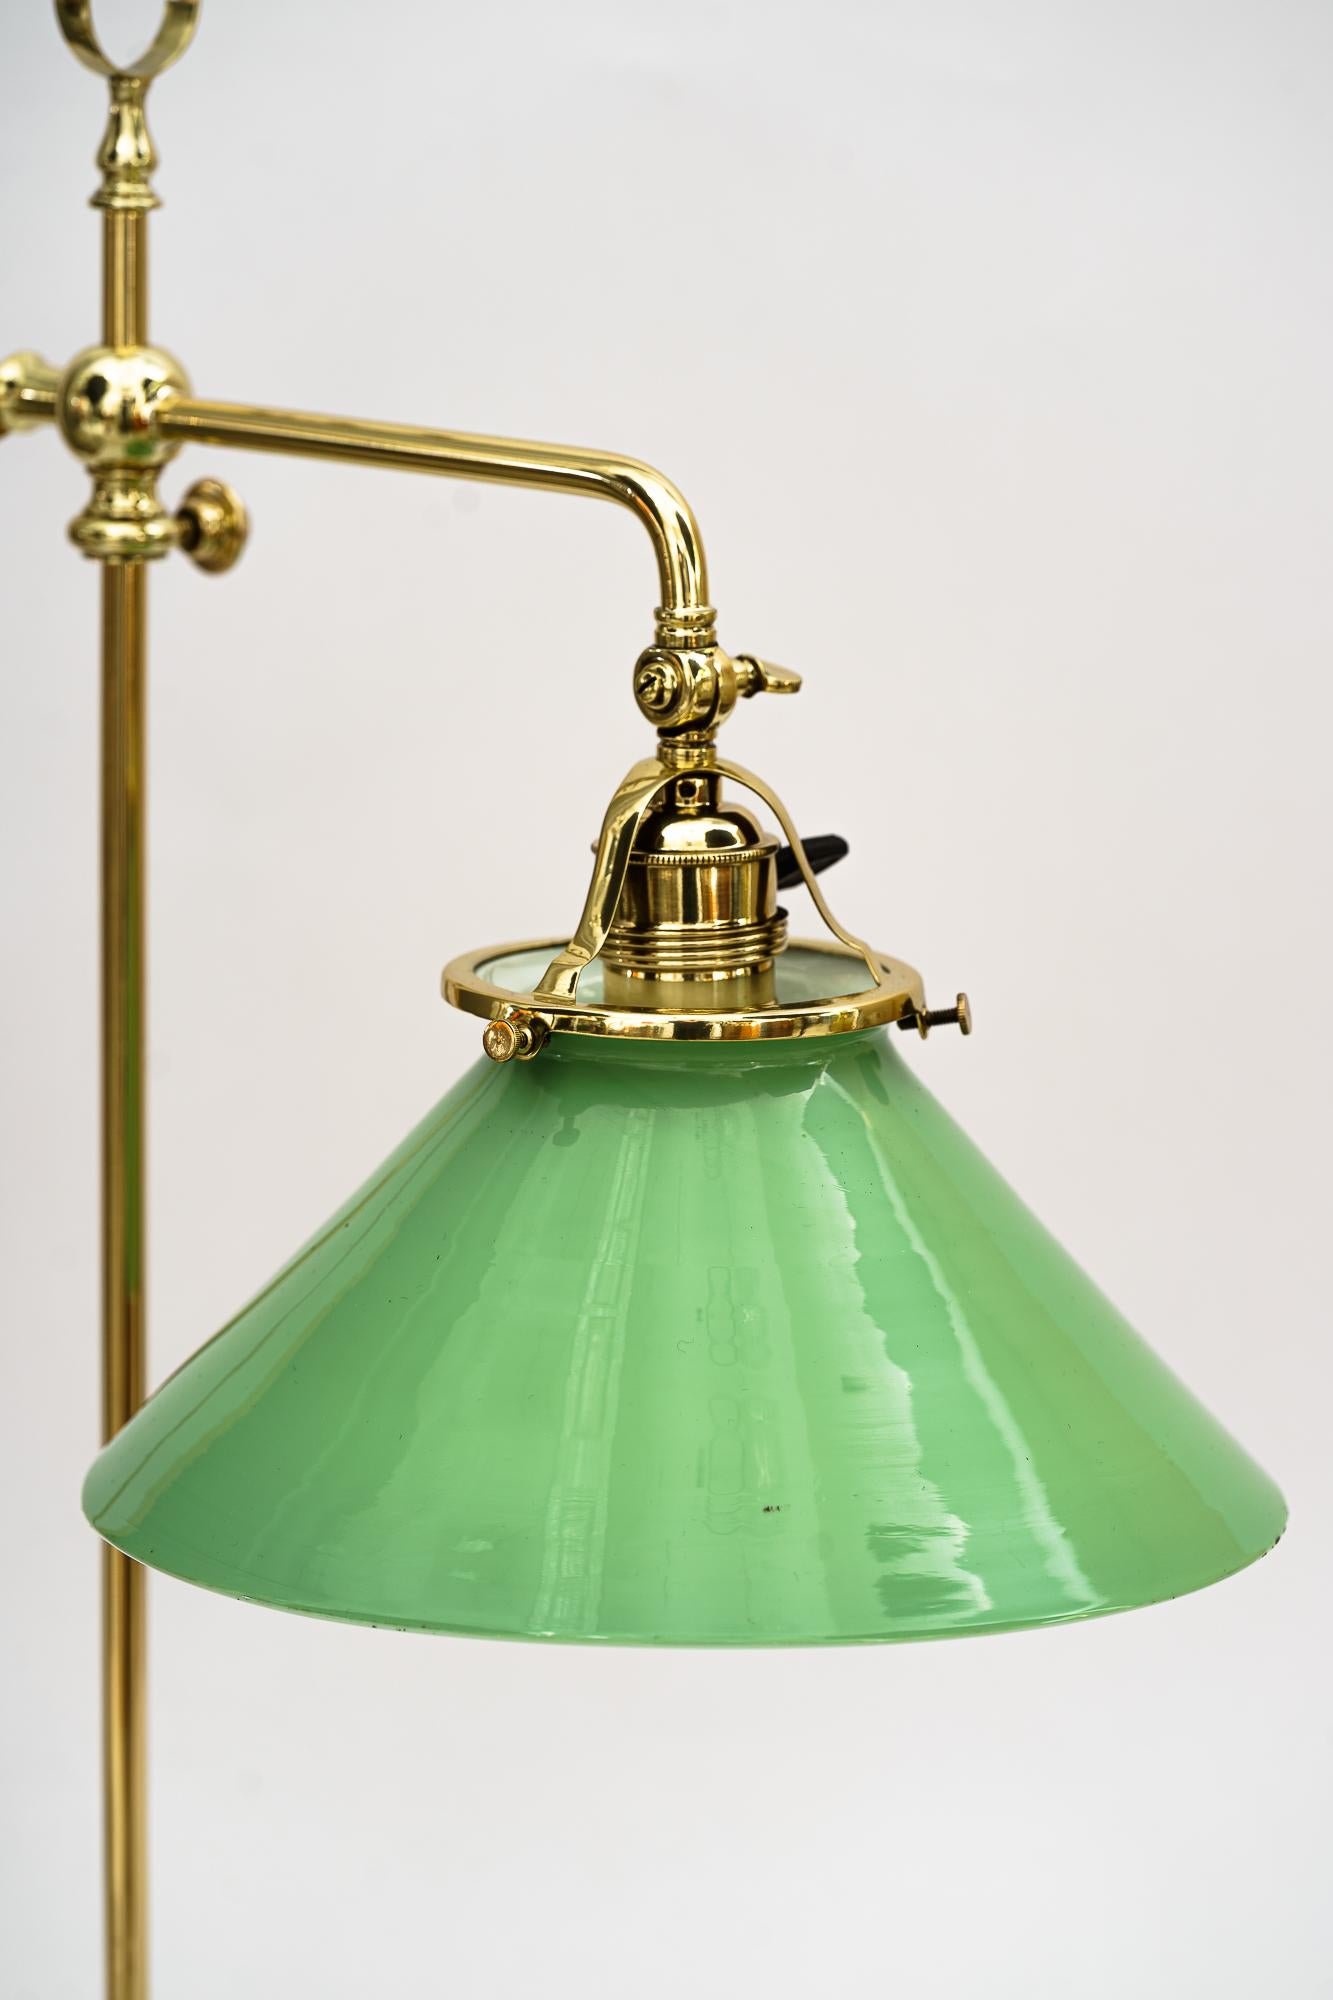 Drehbare Art Deco Tischlampe Wien um 1920er Jahre
Messing poliert und emailliert
Original Opalglas-Schirm